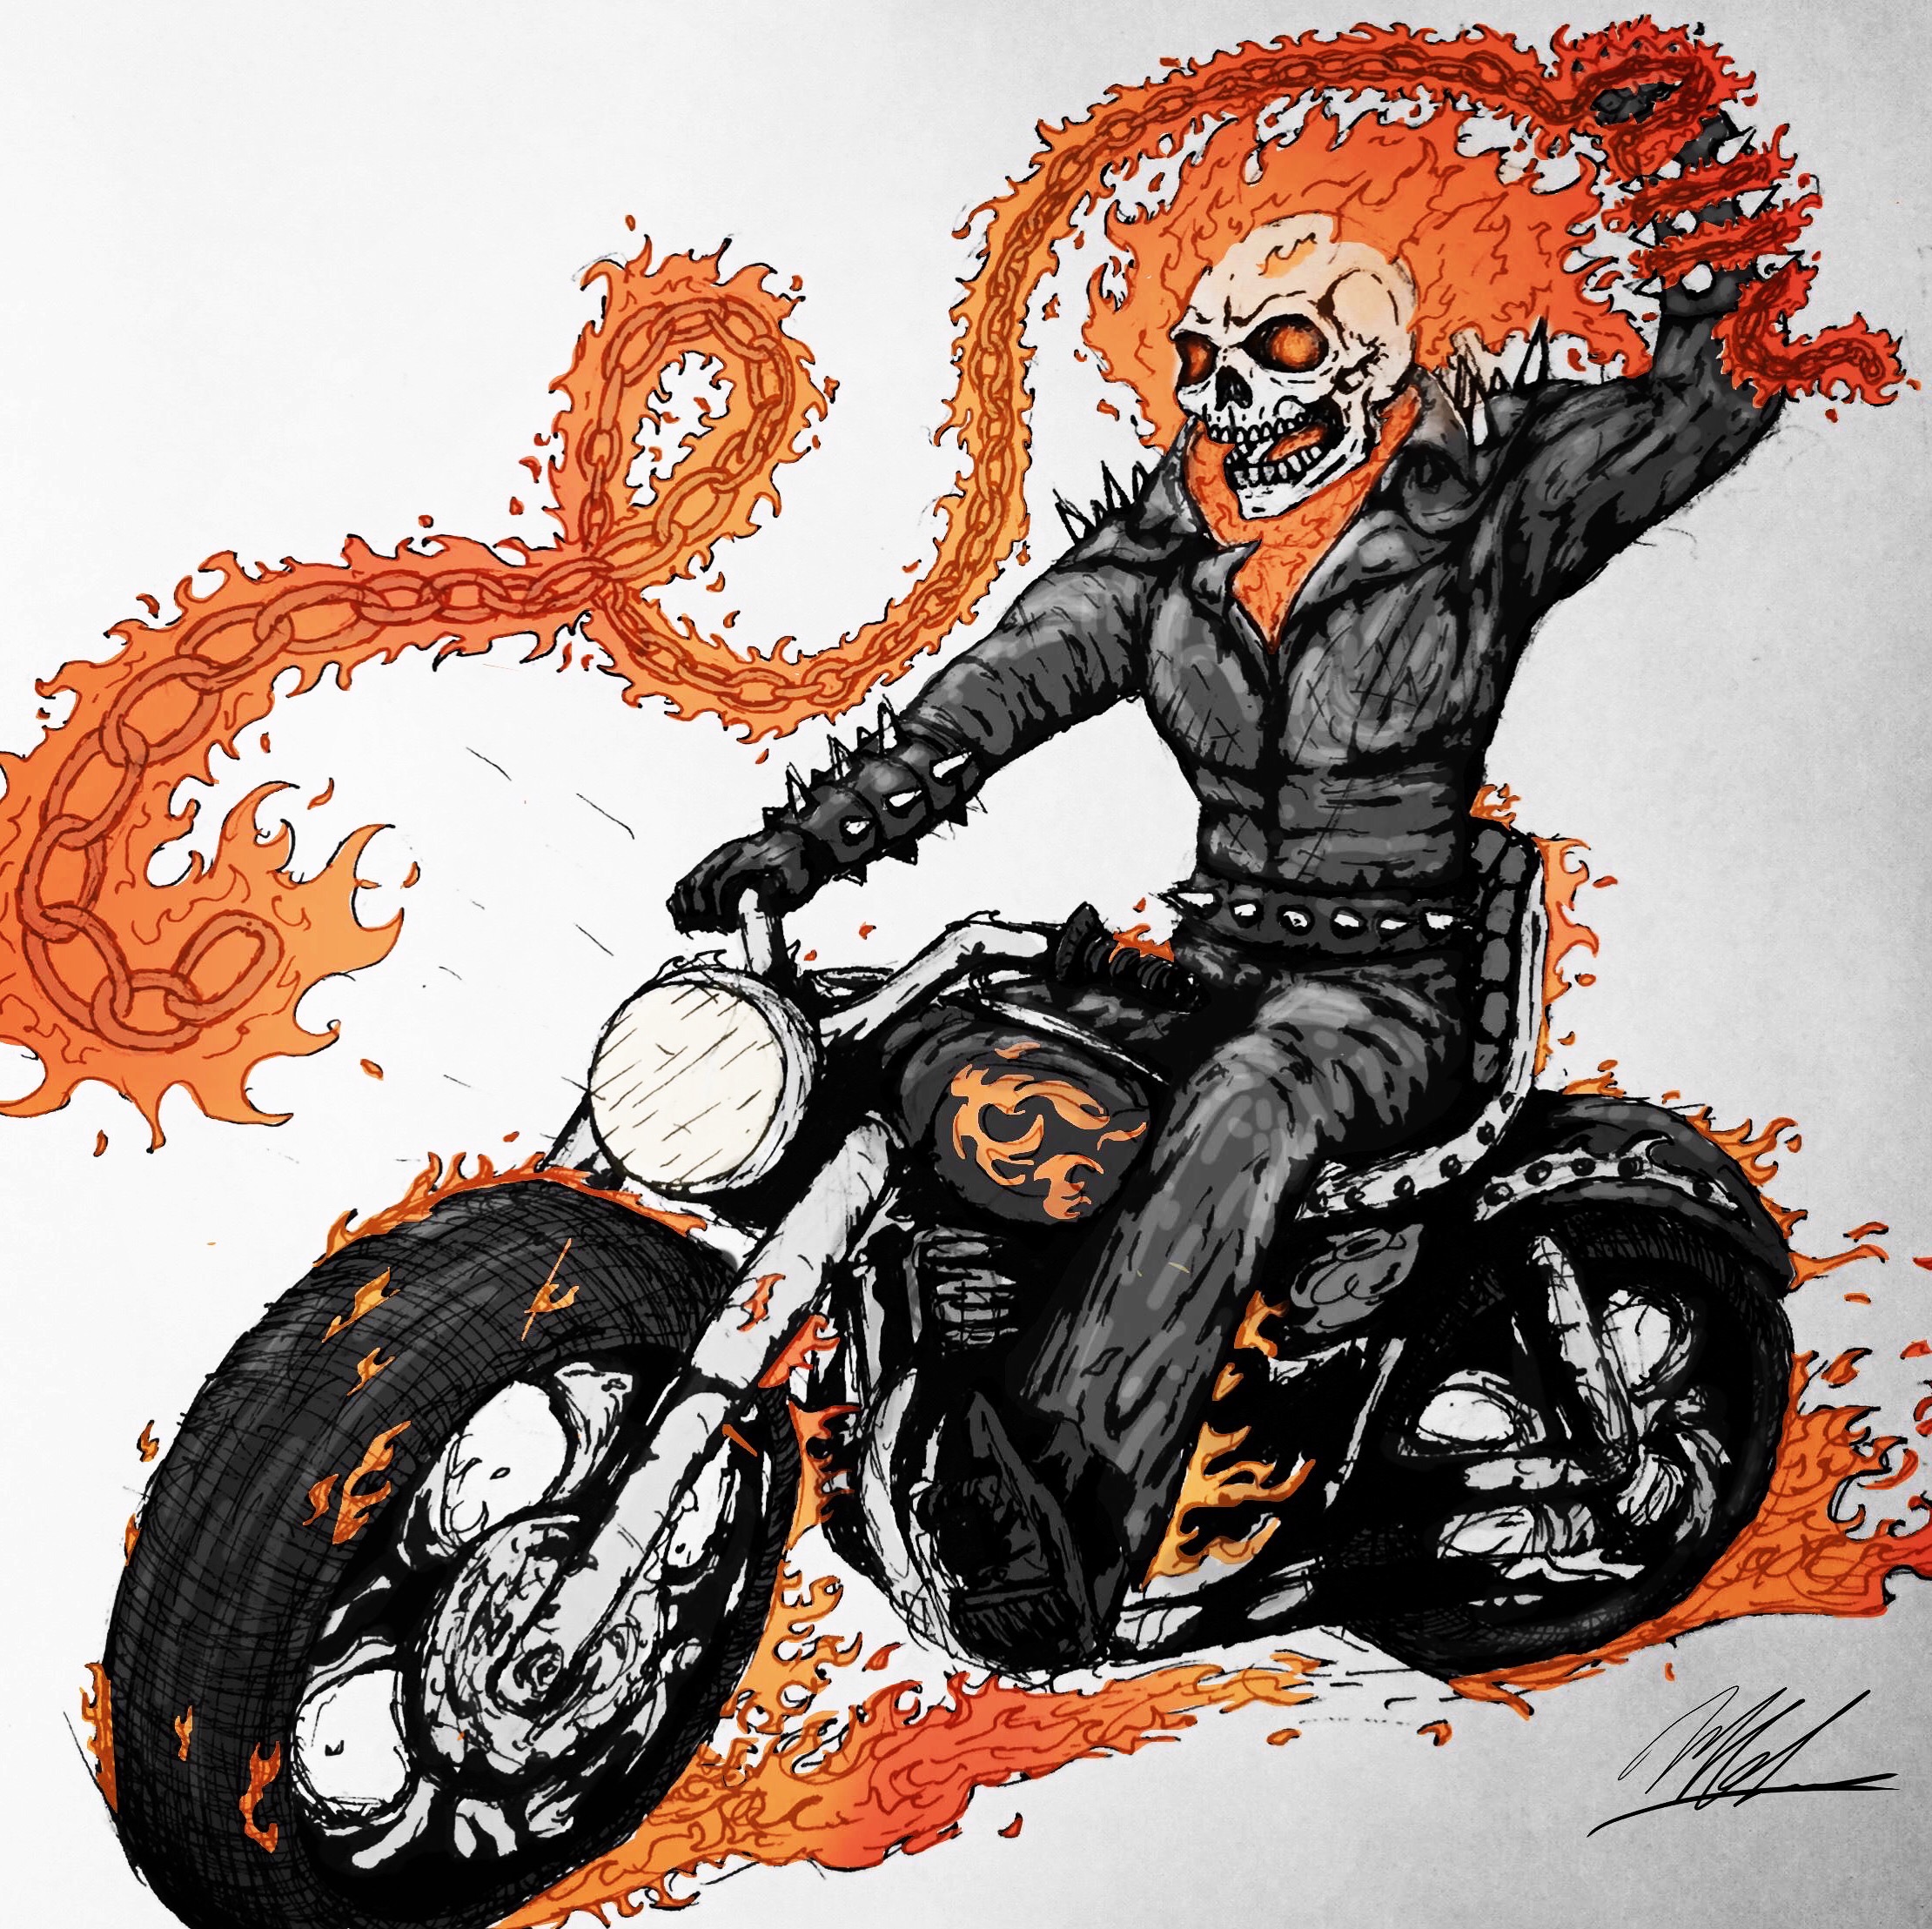 Ghost Rider by mateussanchessouza on DeviantArt